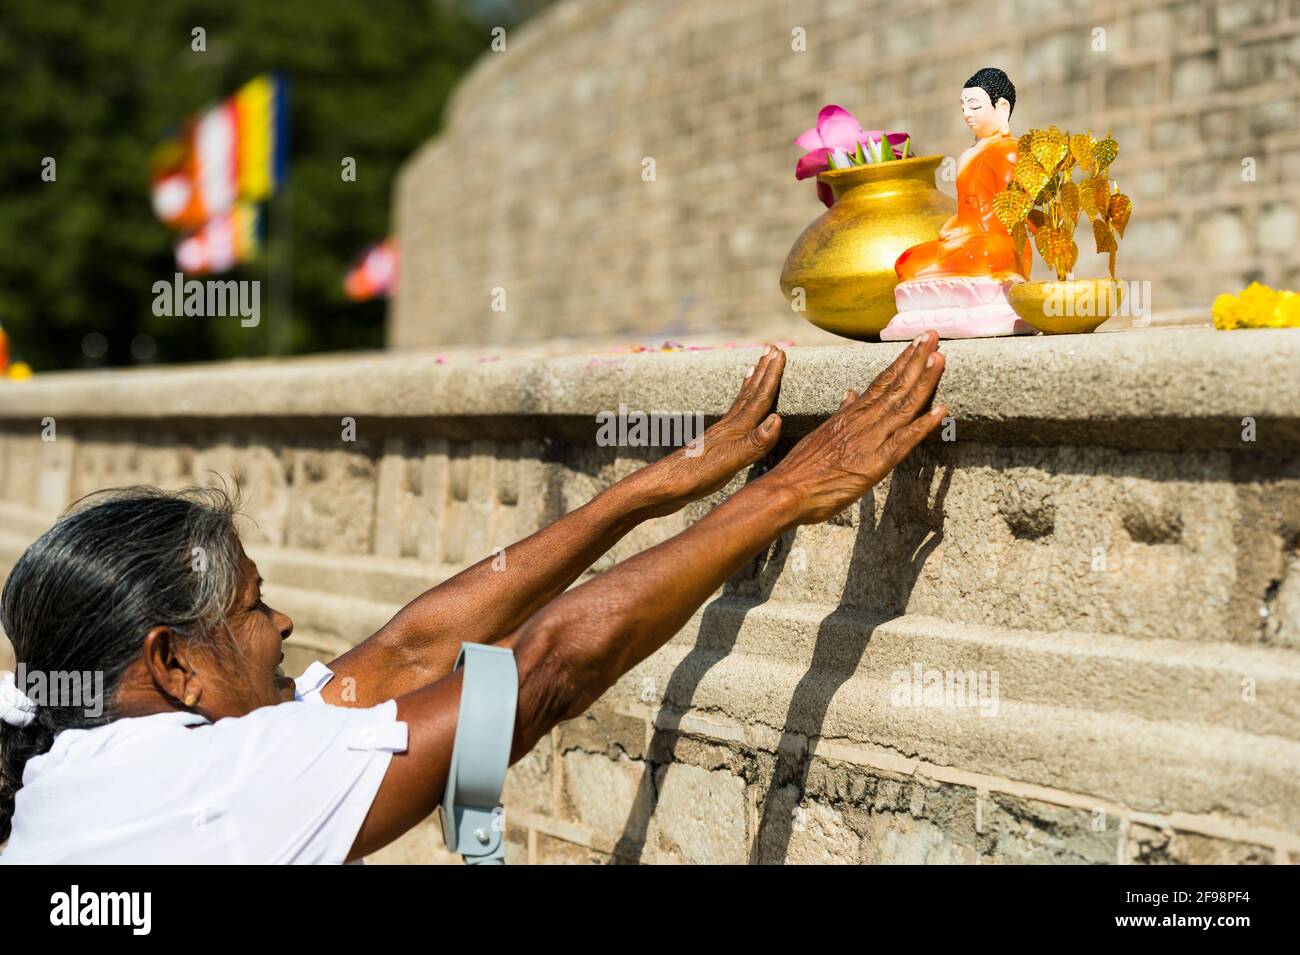 Sri Lanka, Anuradhapura, Ruwanweli Seya Dagoba, senior citizen, offerings, Stock Photo